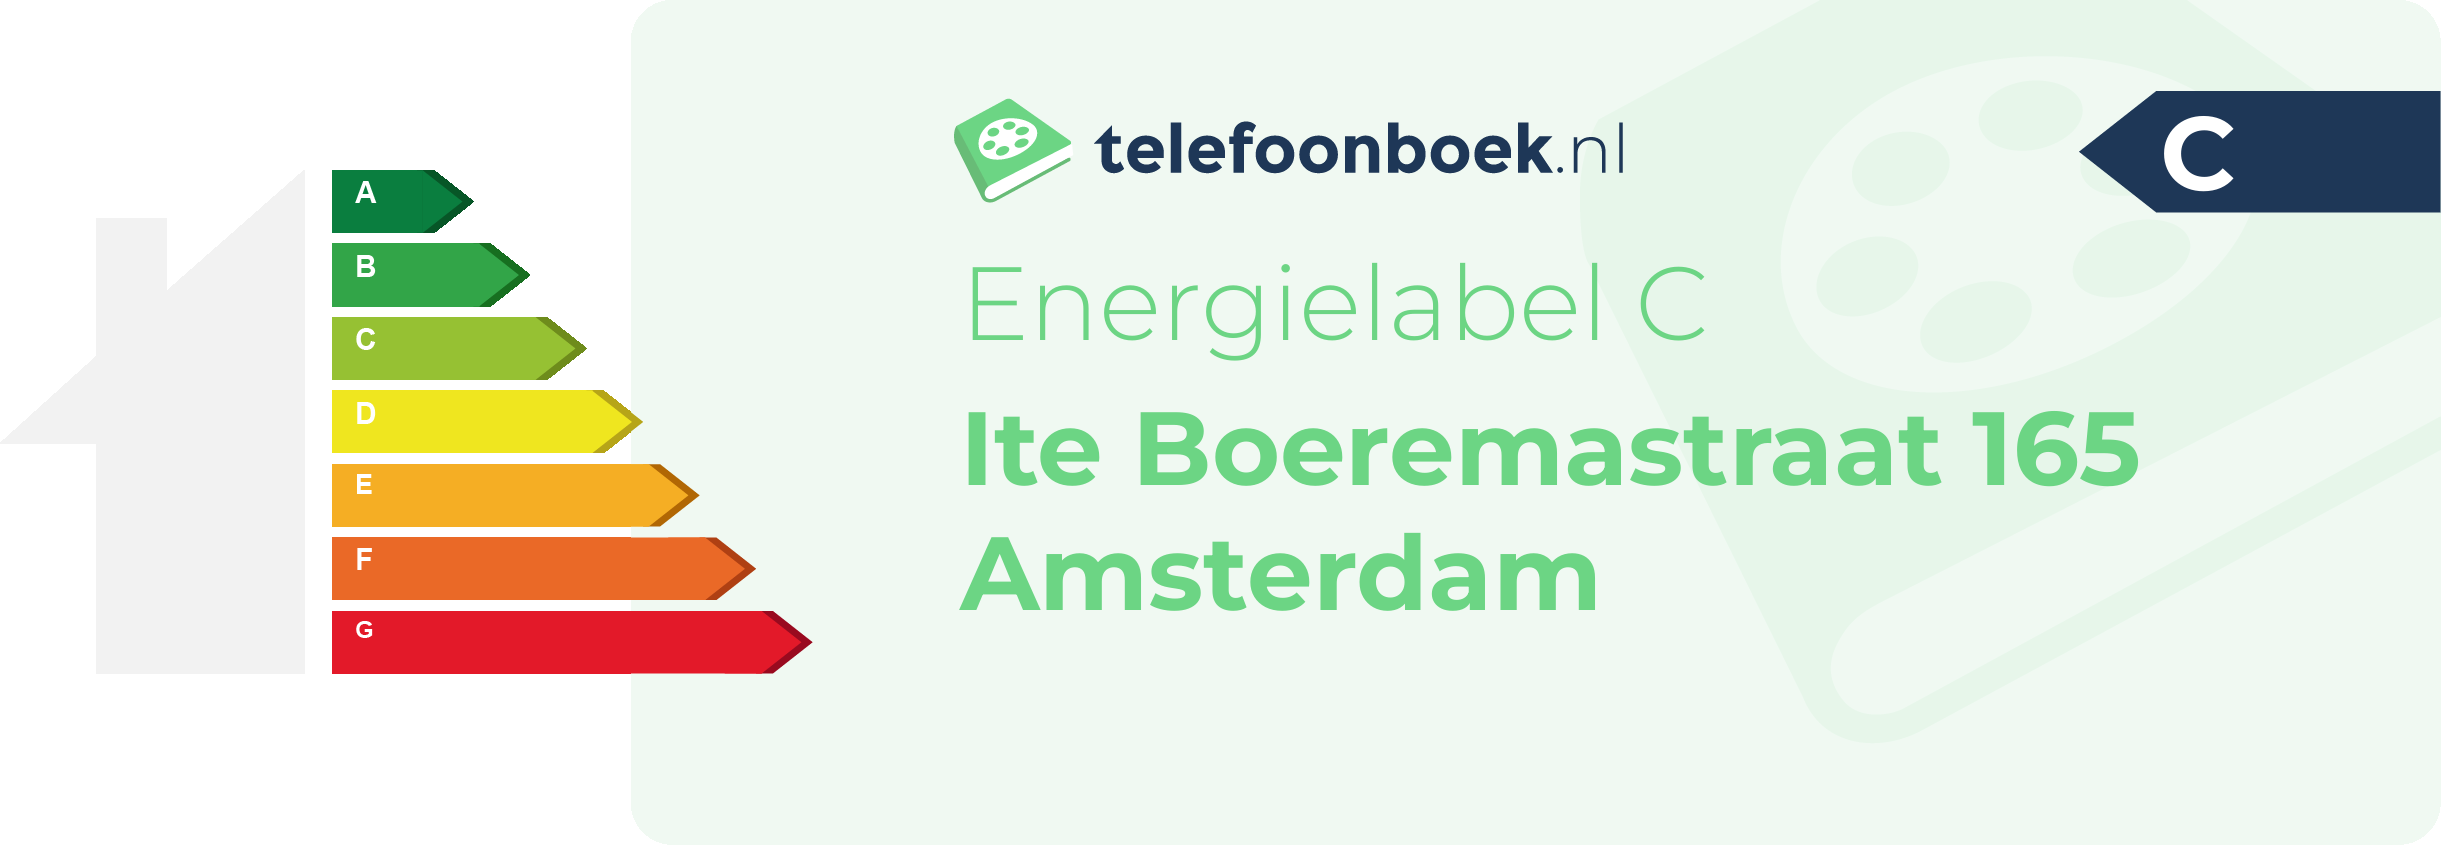 Energielabel Ite Boeremastraat 165 Amsterdam